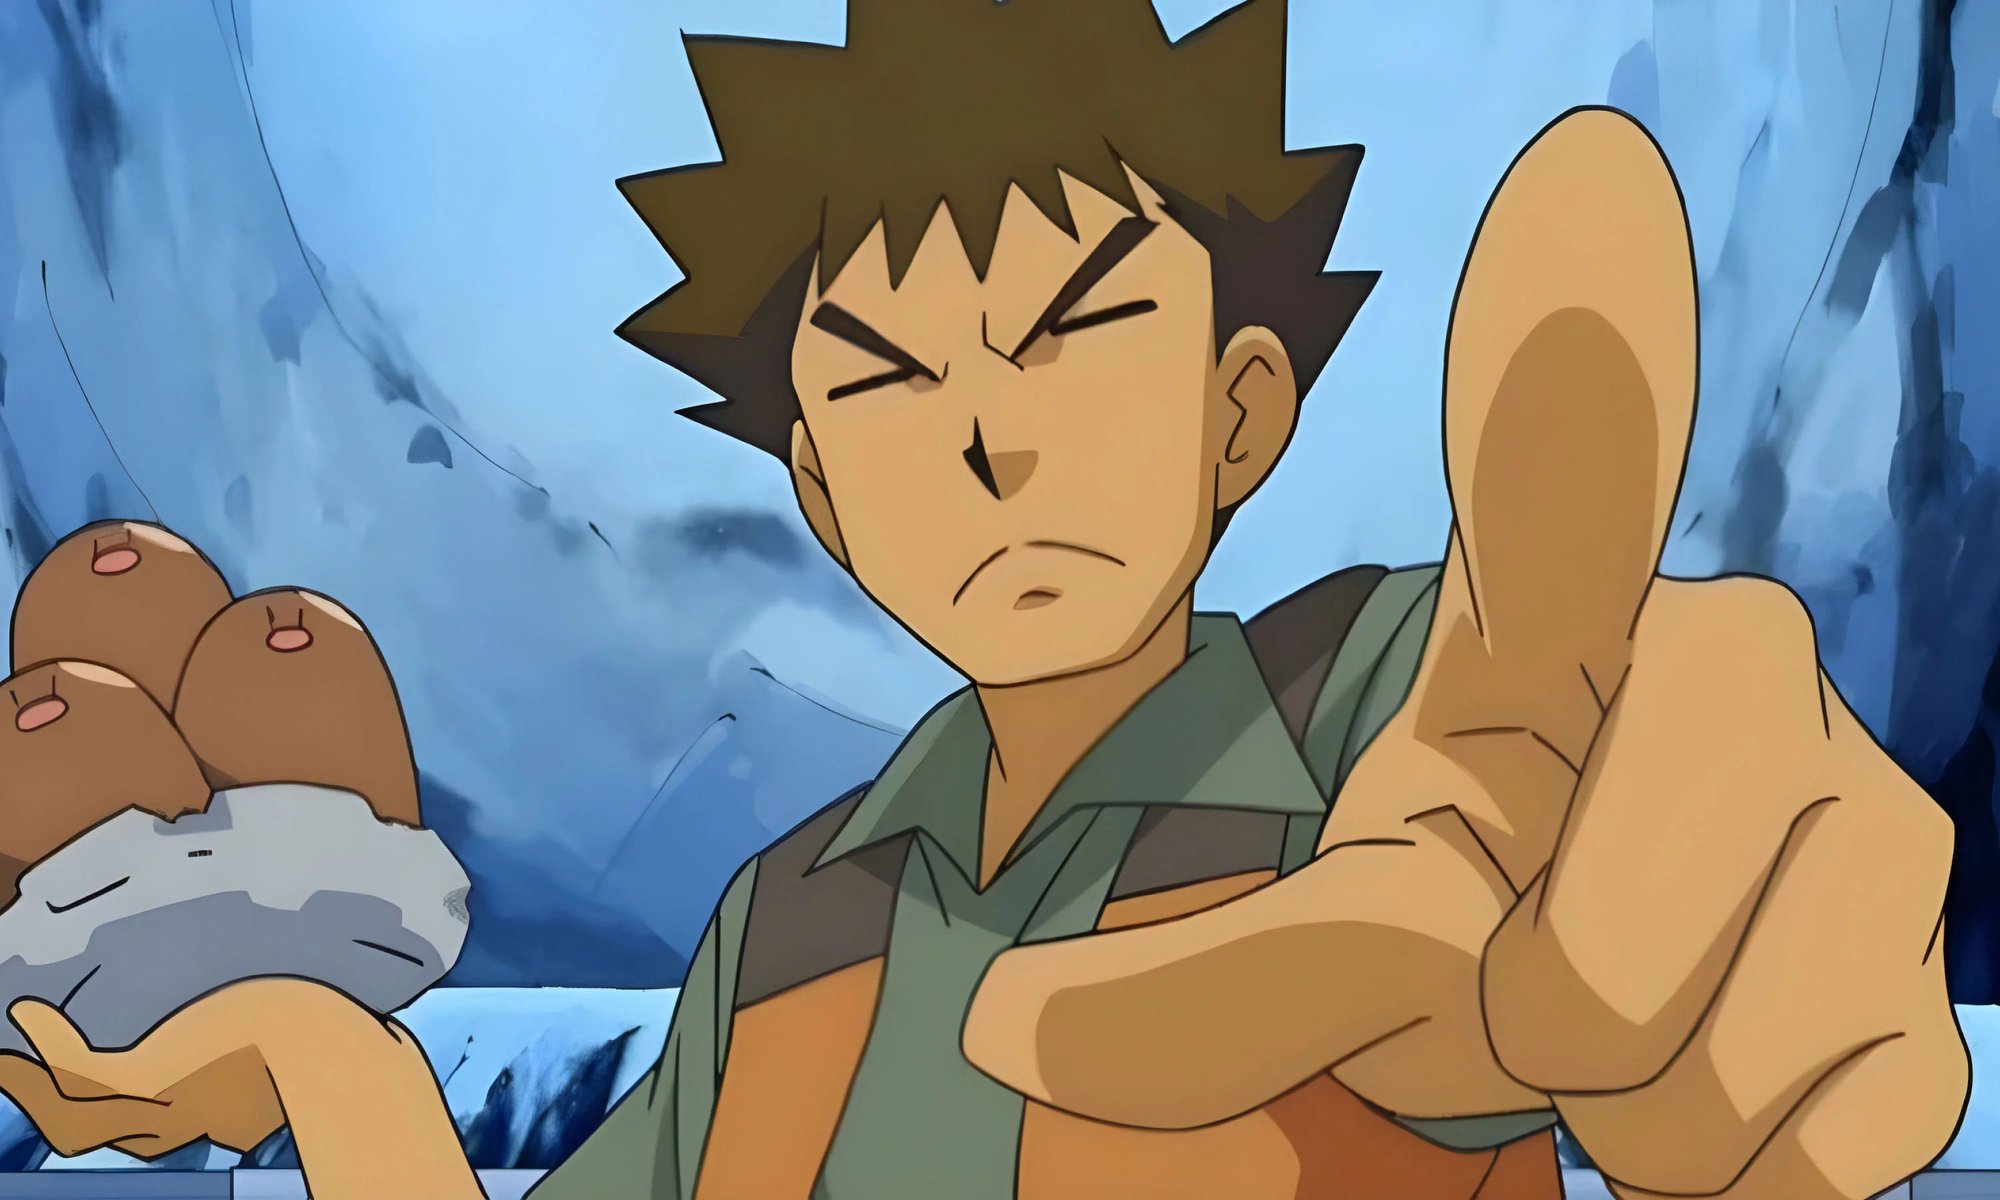 Brock (Pokemon anime)